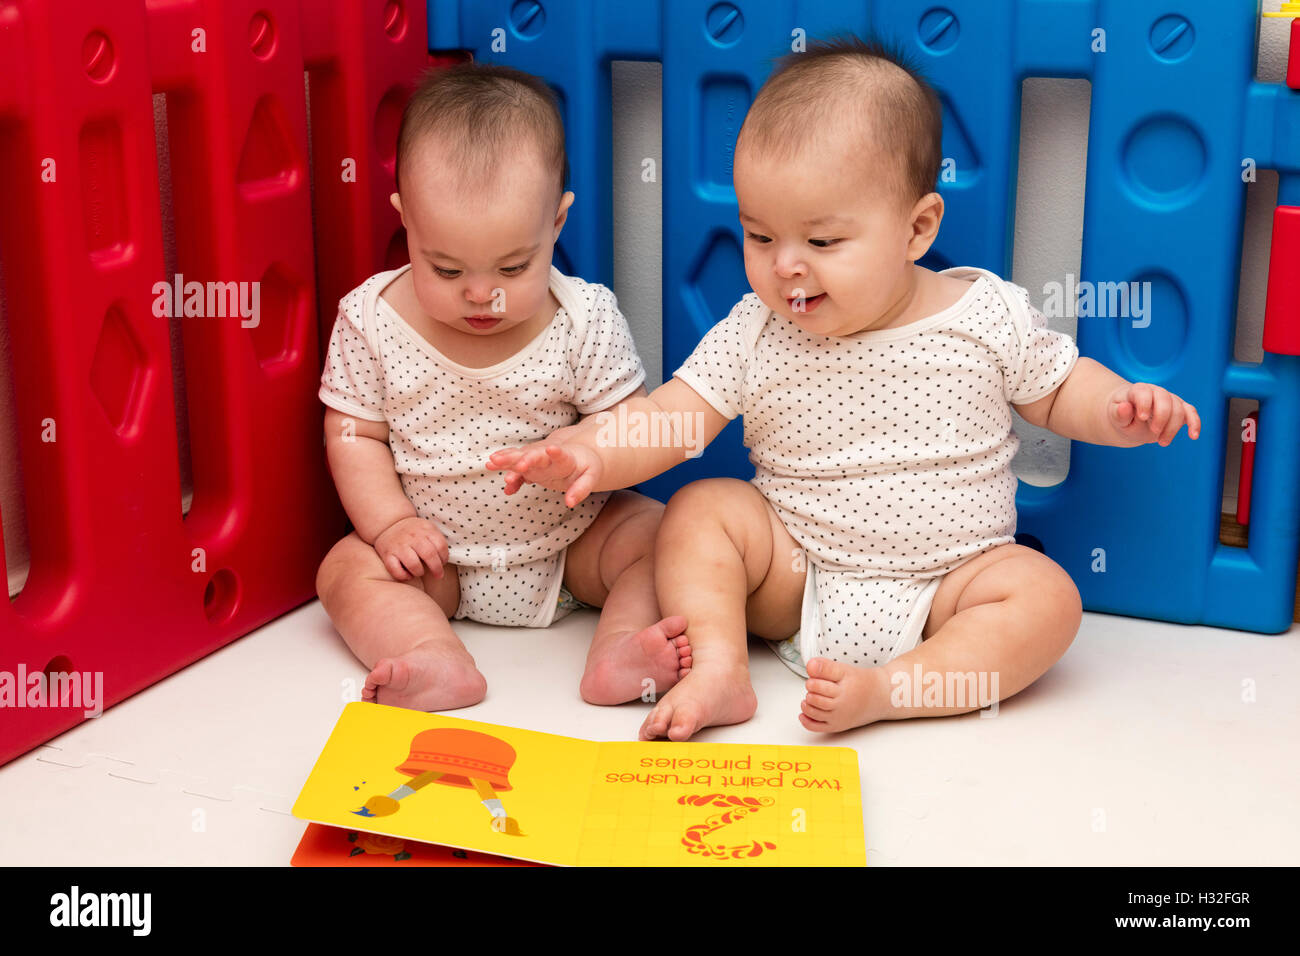 Twin bebés mirando libro ilustrado en corralito Foto de stock